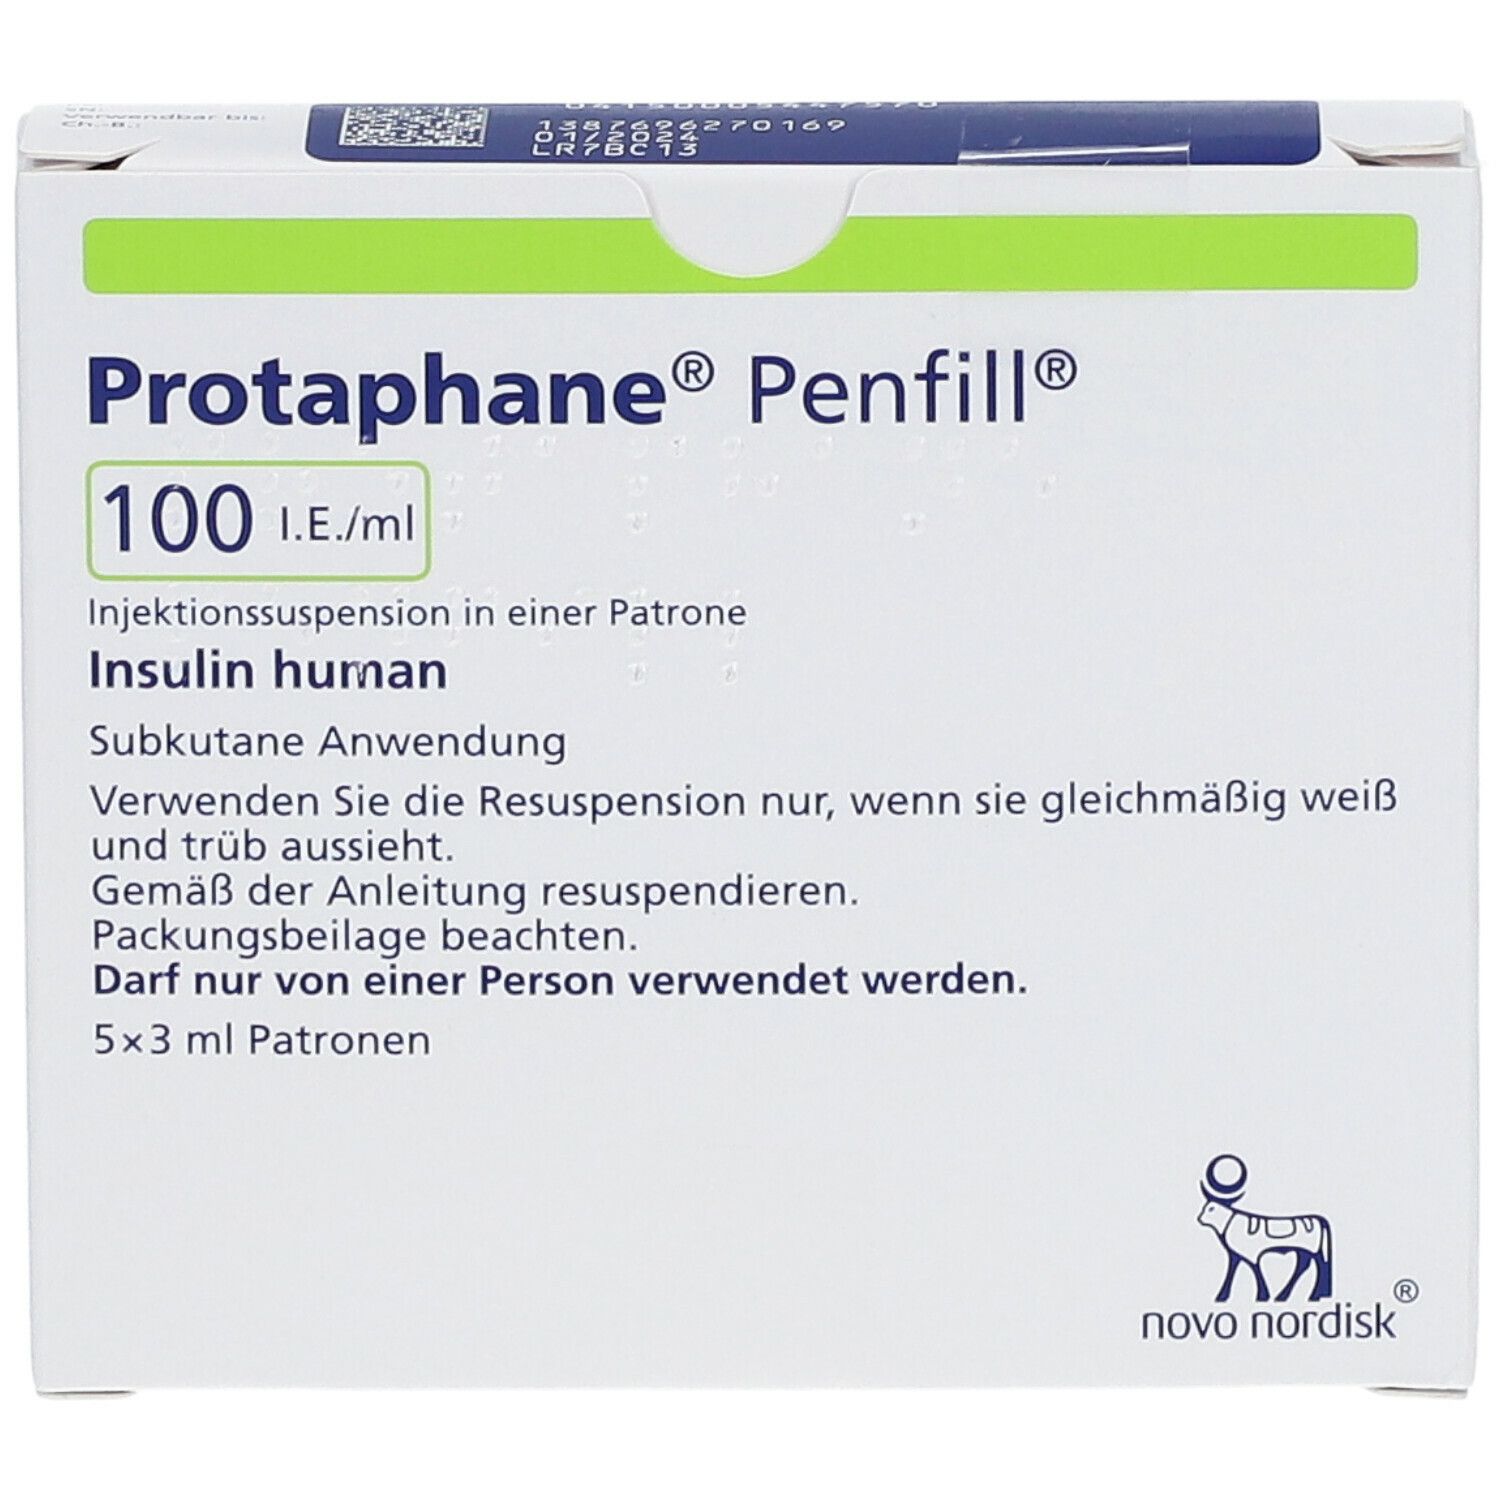 Protaphane® Penfill® 100 I.E./ml